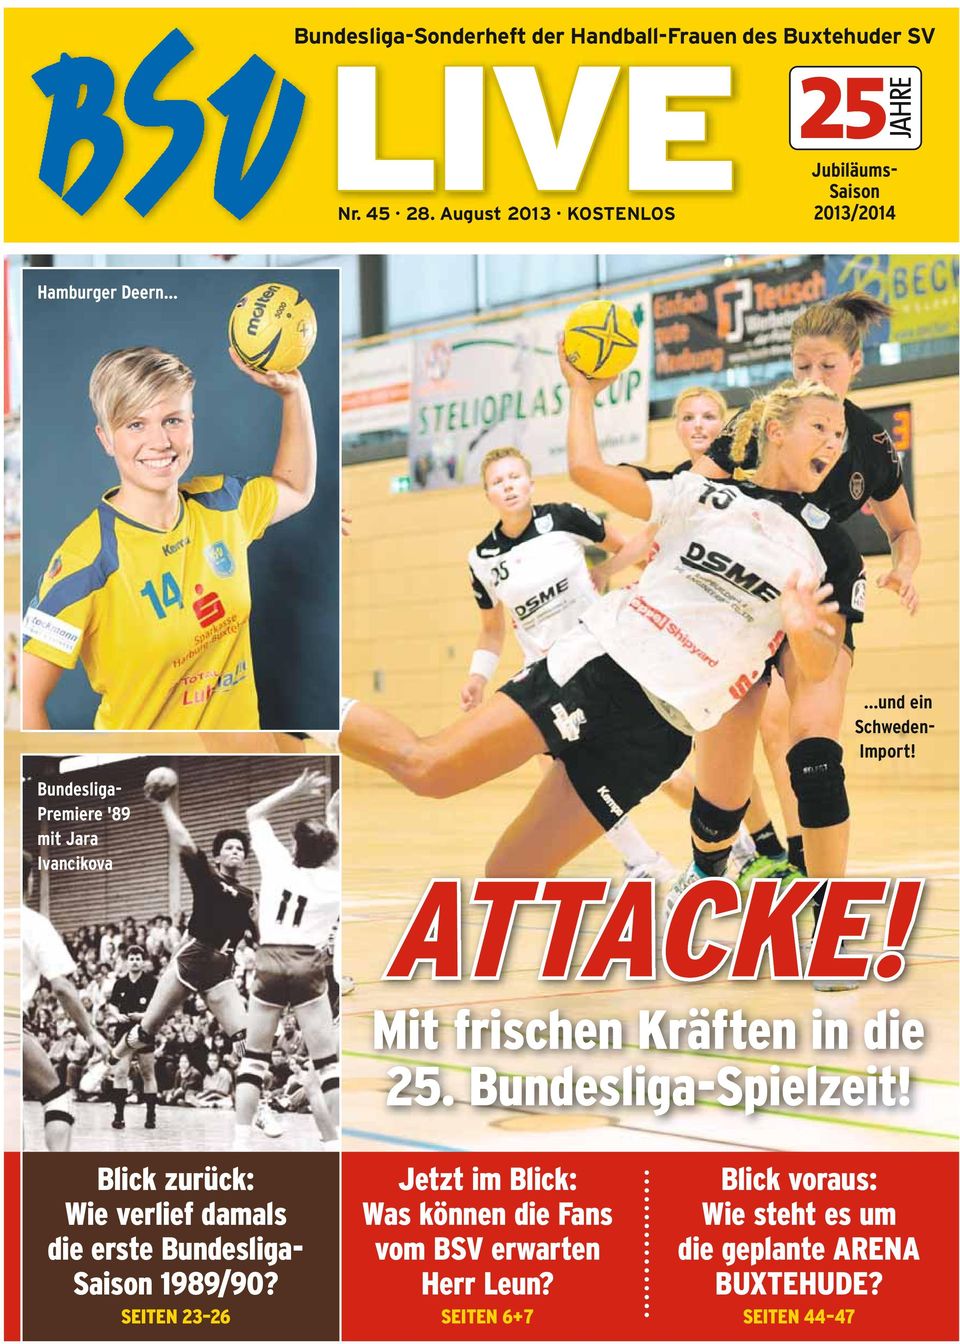 Bundesliga- Premiere '89 mit Jara Ivancikova Mit frischen Kräften in die 25. Bundesliga-Spielzeit!